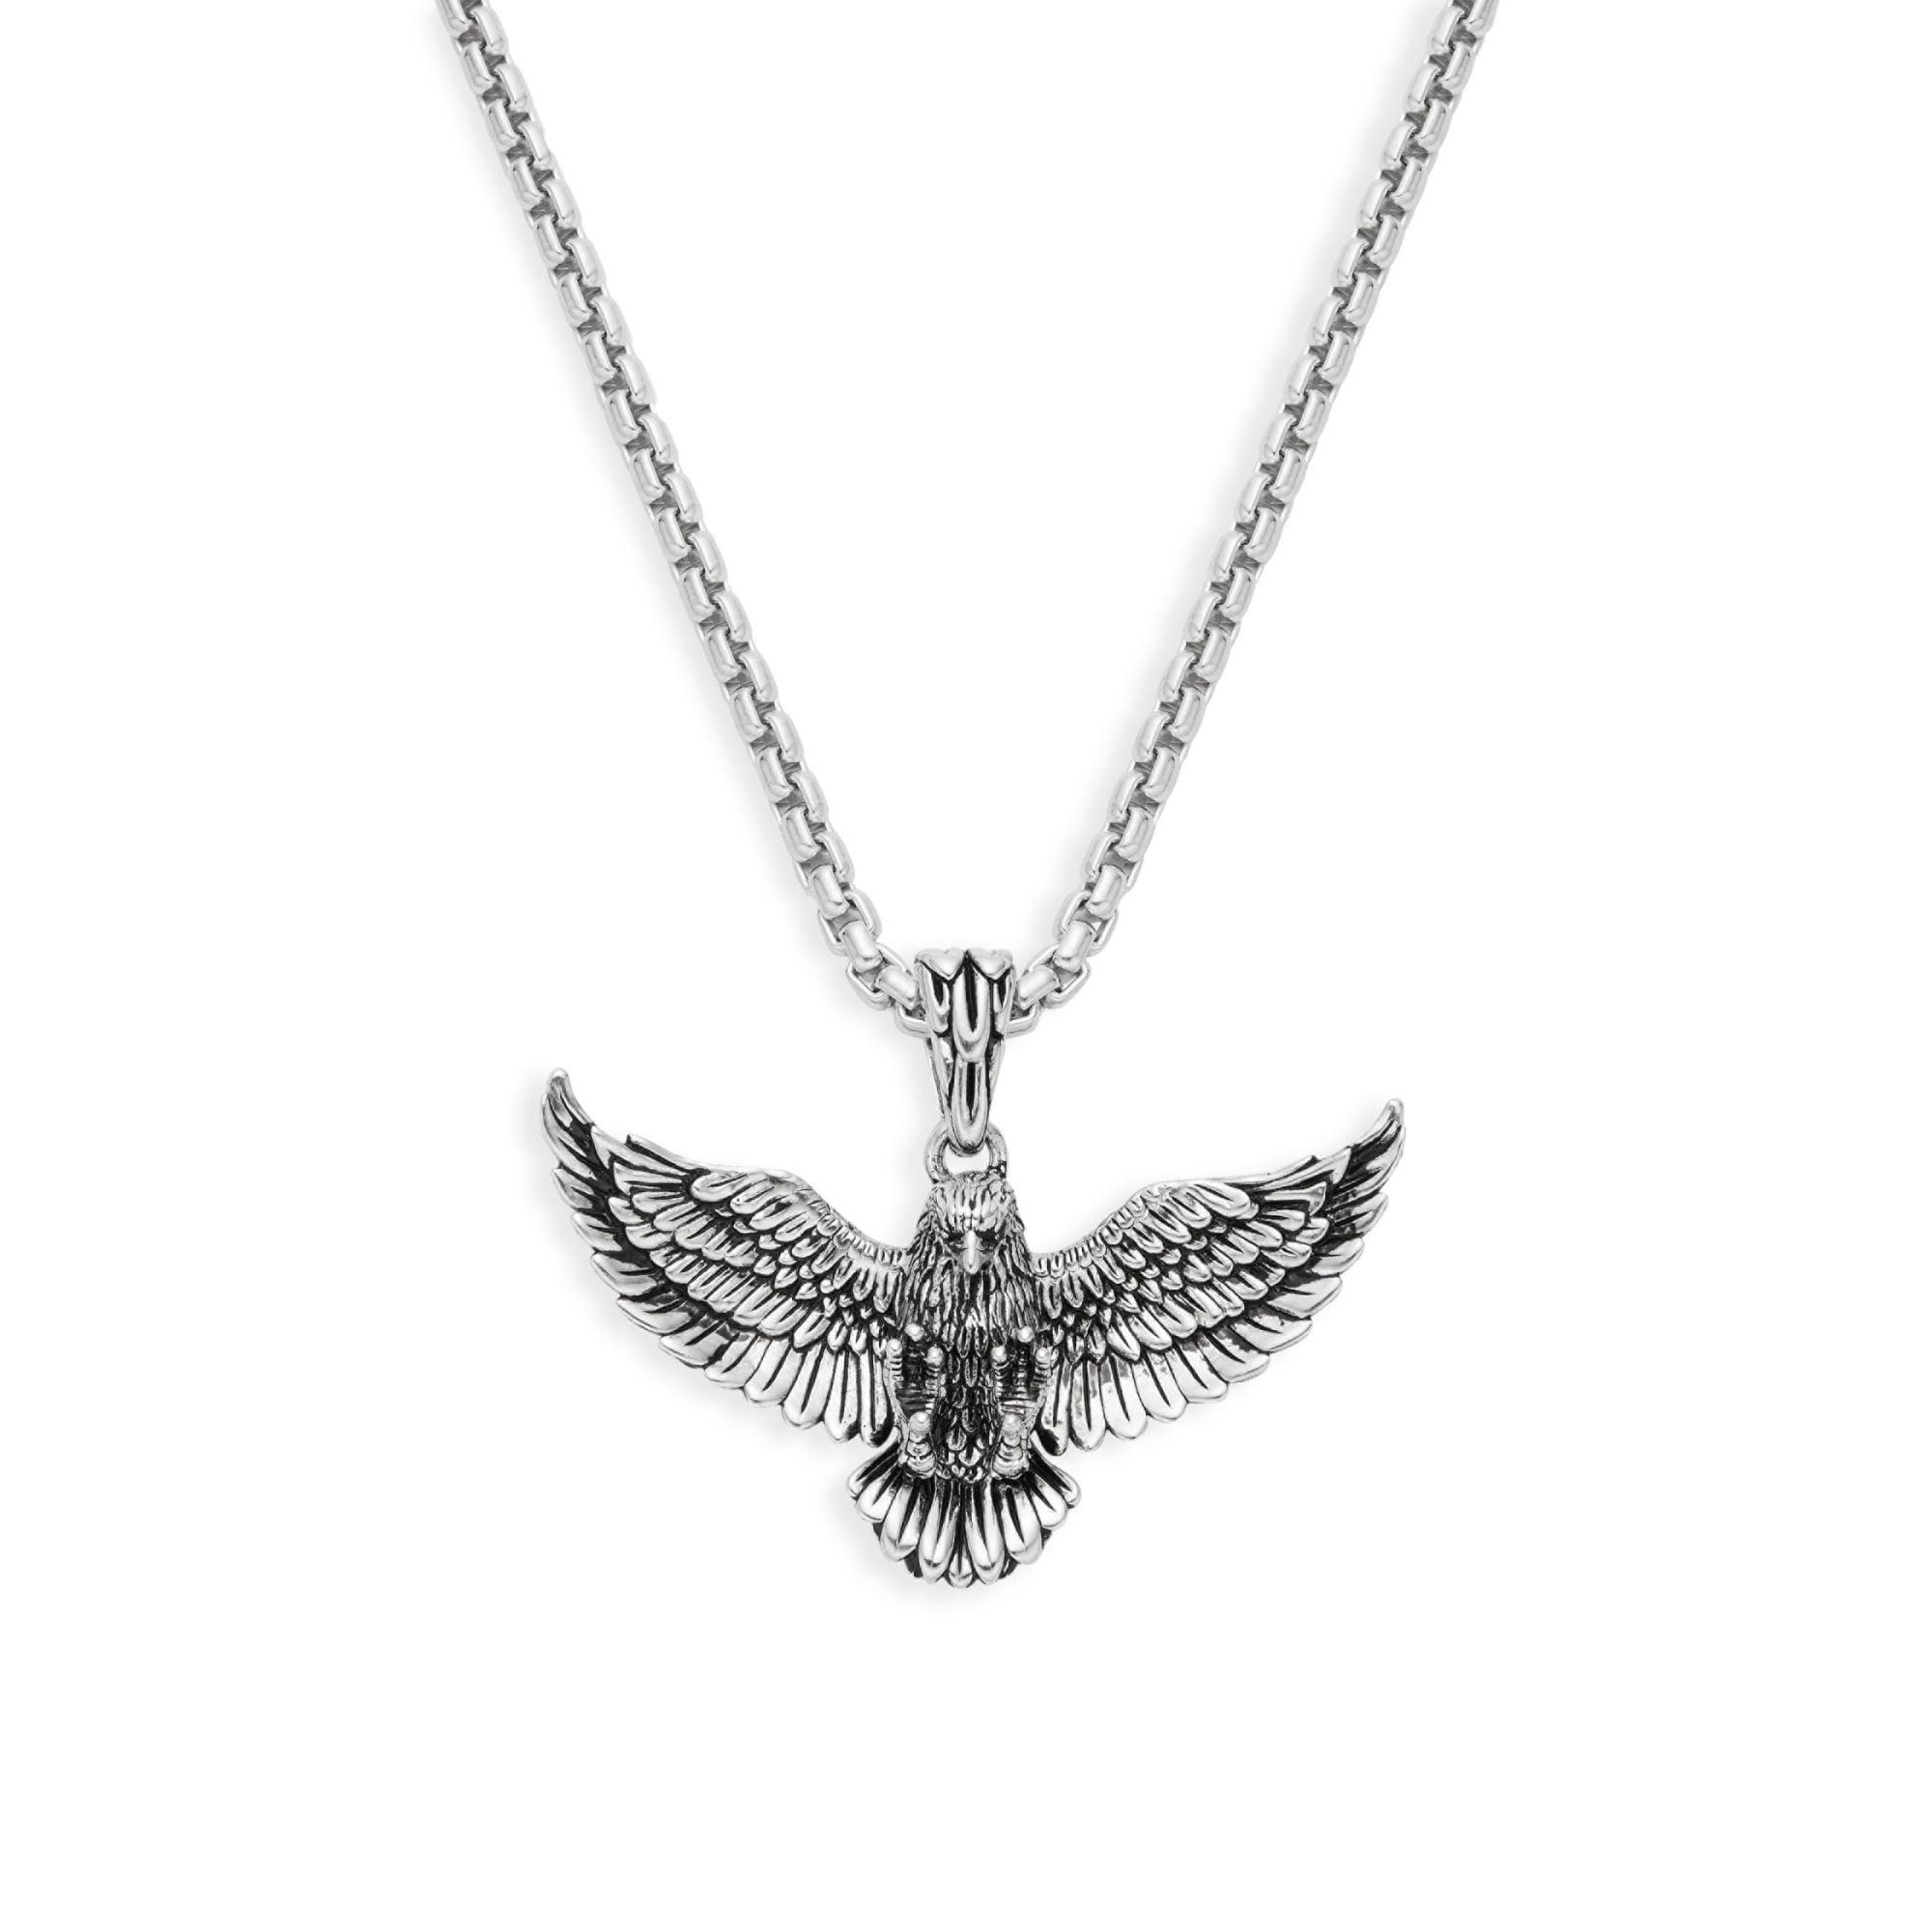 Eagle pendant necklace